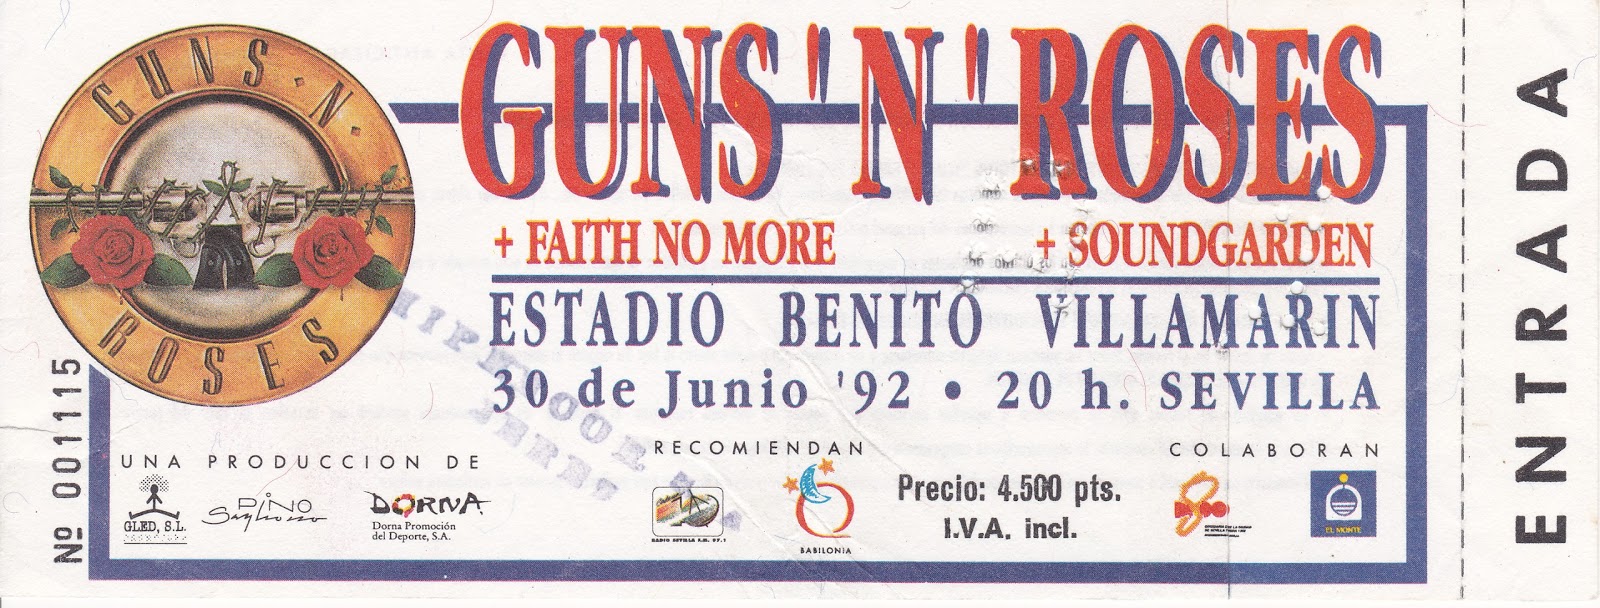 No más conciertos en ESTADIOS - Página 2 1992-06-30+Guns+N+Roses